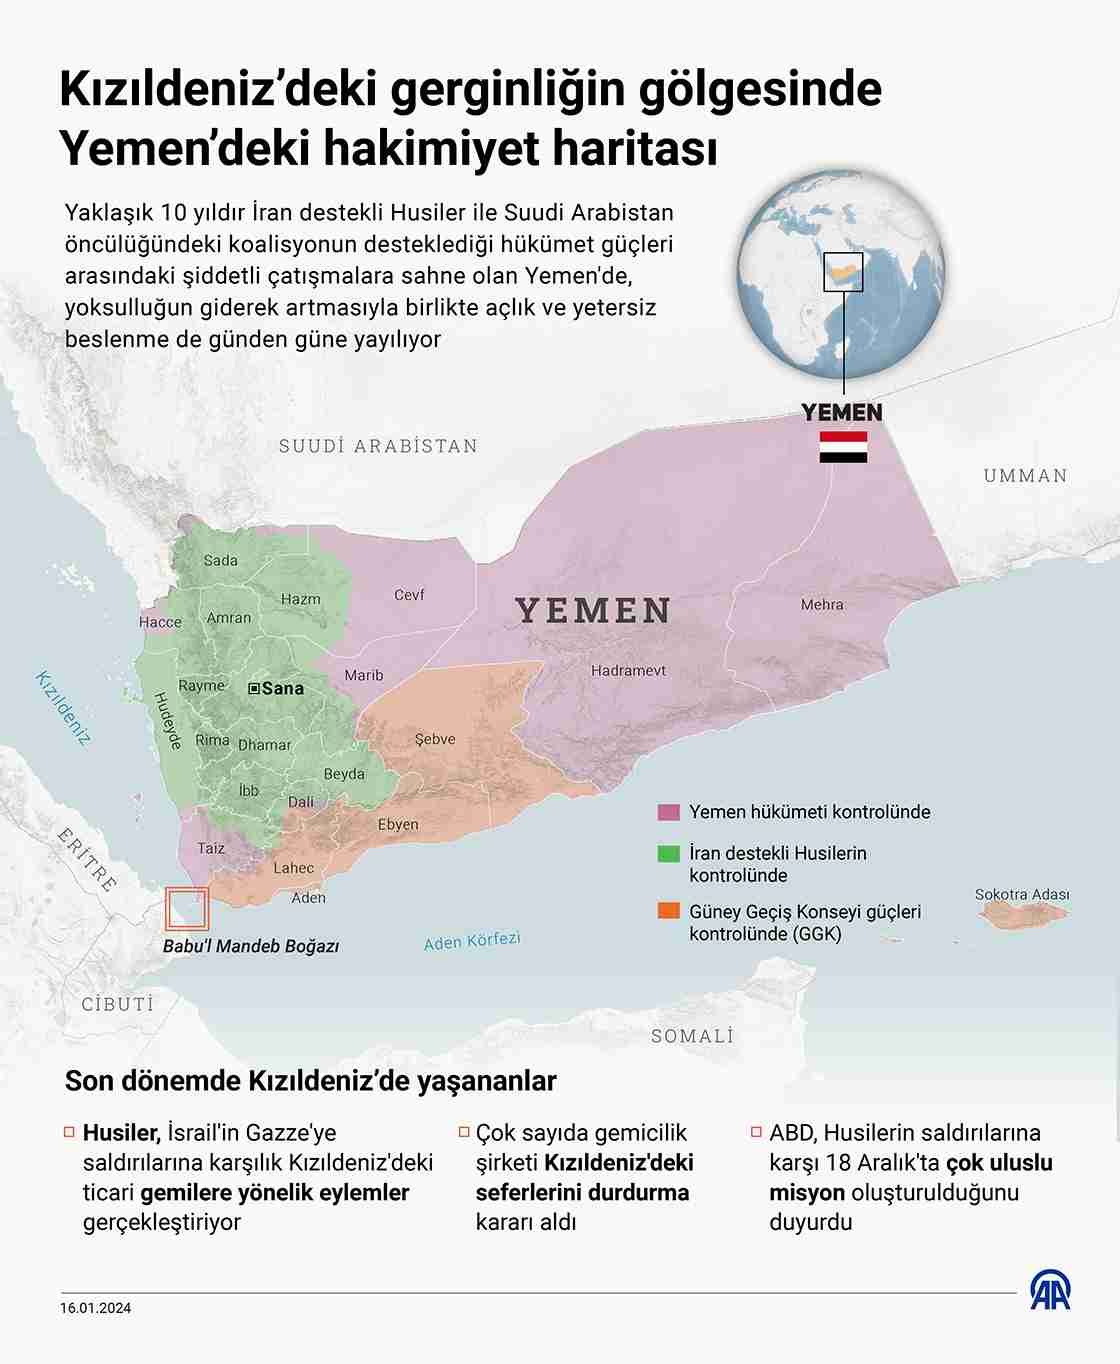 Kızıldeniz’deki gerginliğin gölgesinde Yemen’deki hakimiyet haritası